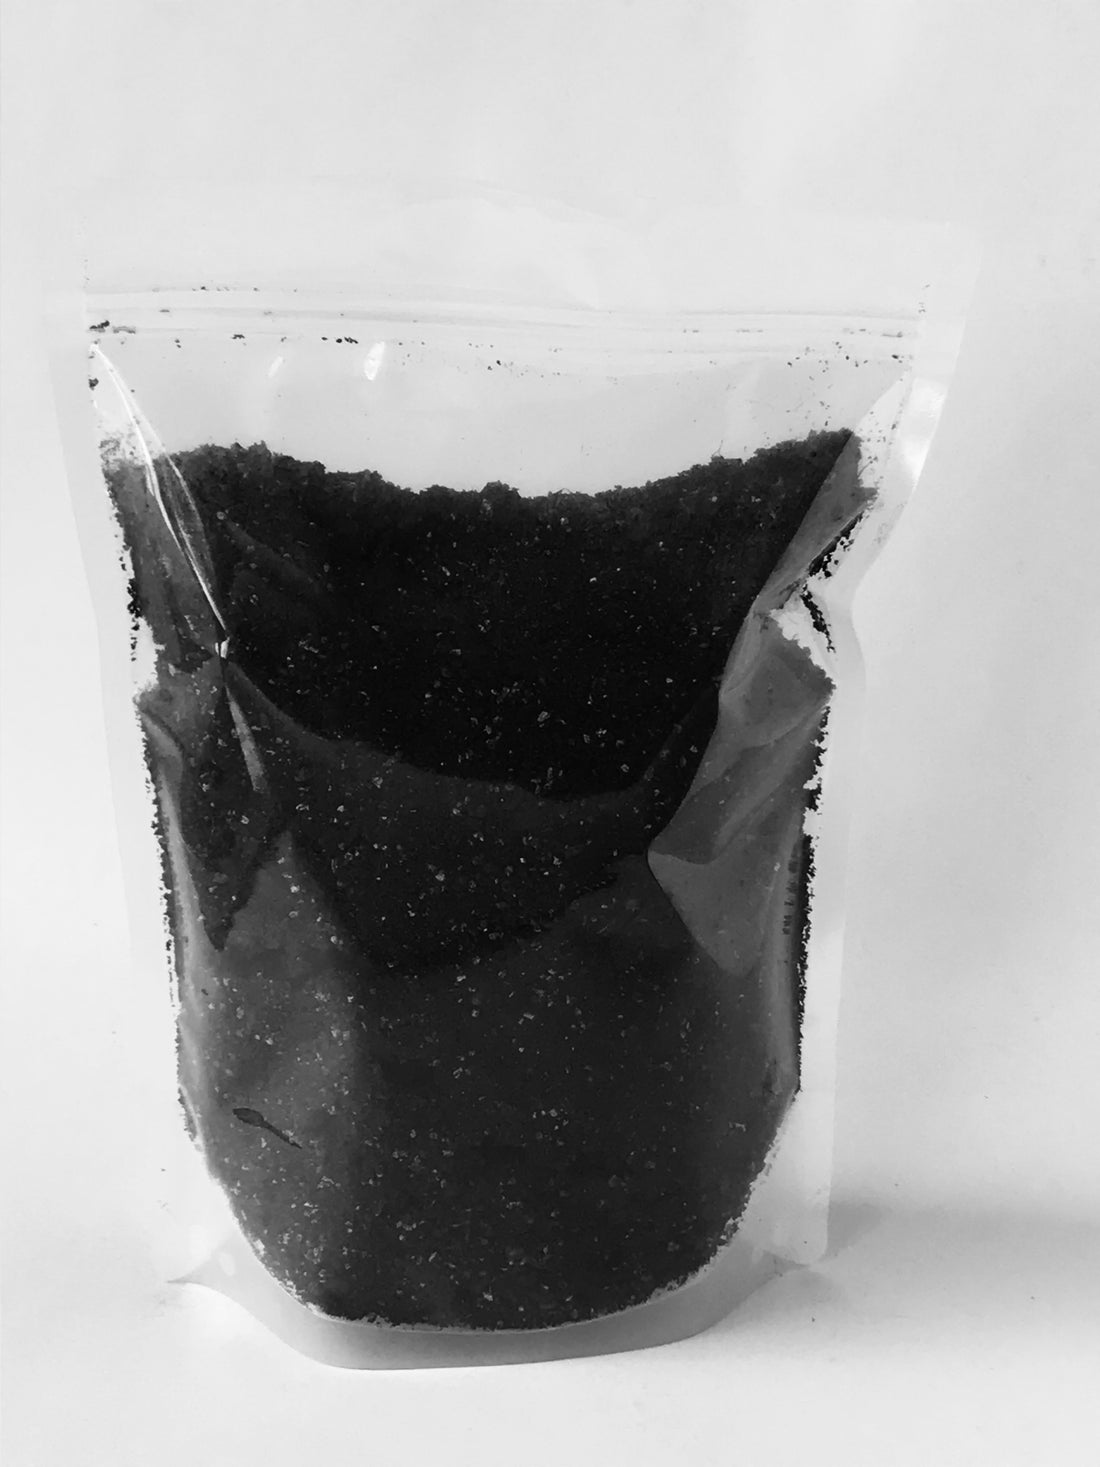 Bioganic Earth - Podium & Container Blend (1.5kg)